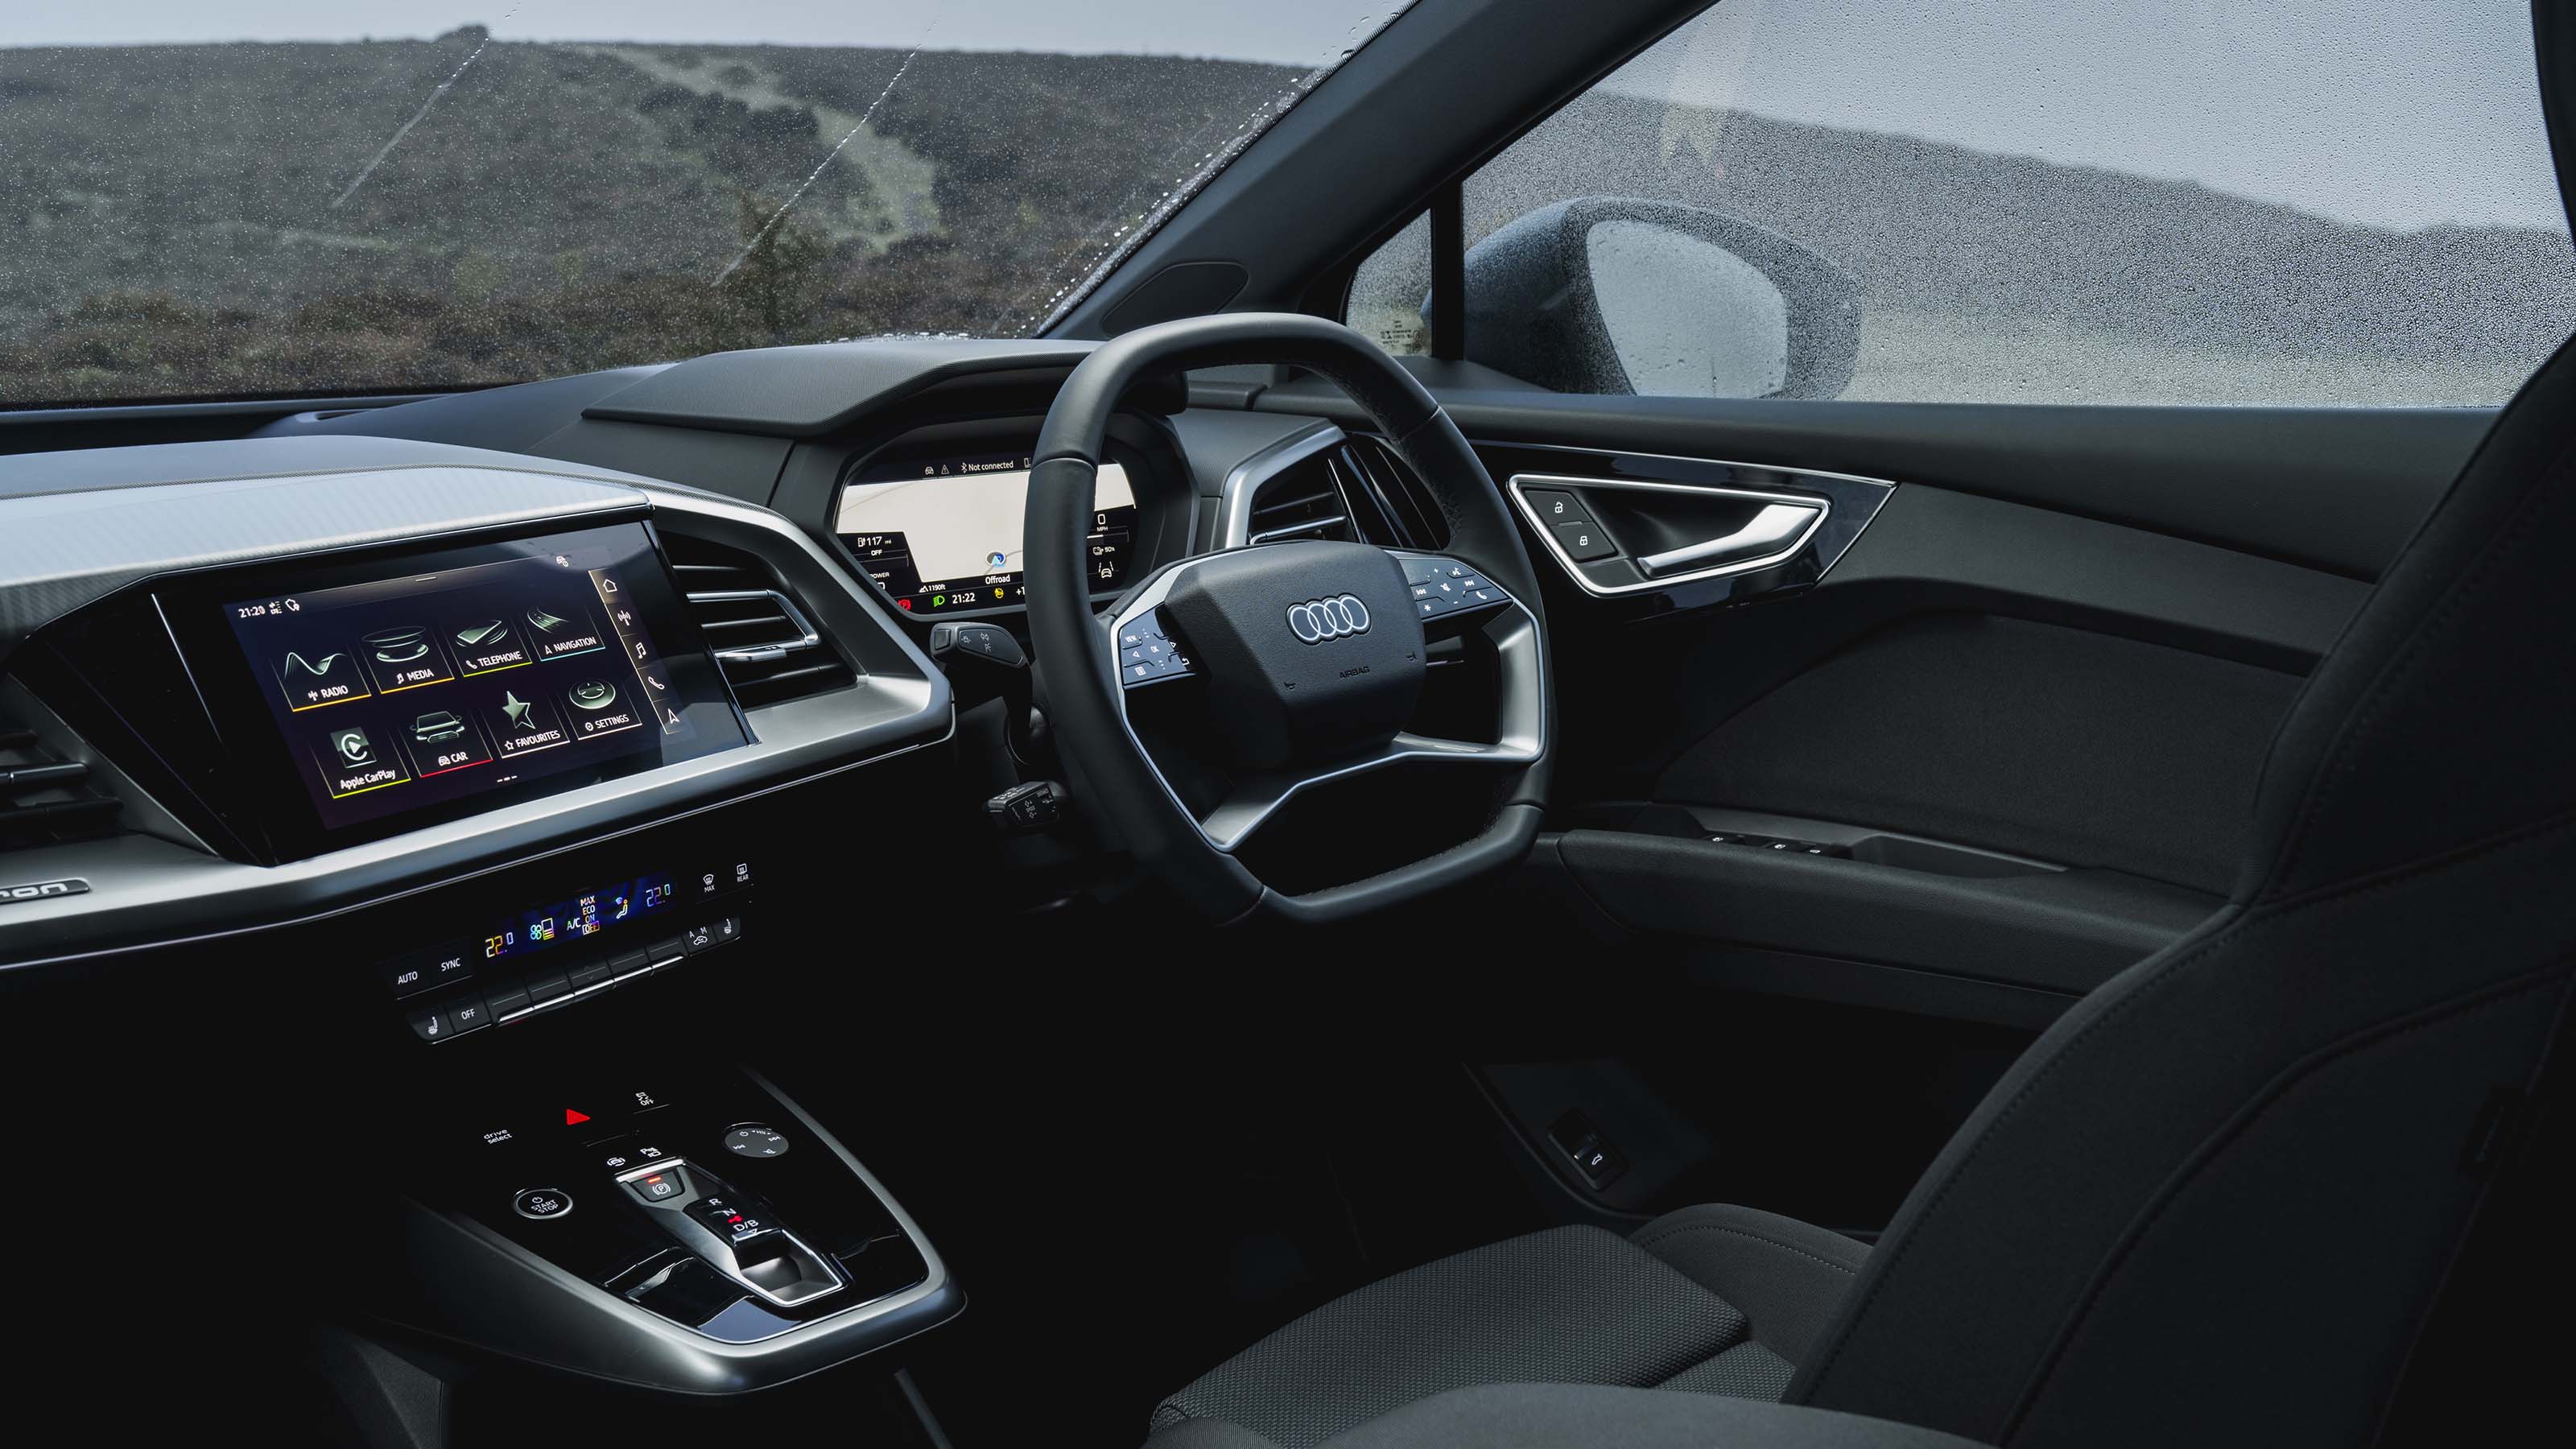 Audi Q4 interior, dashboard & comfort